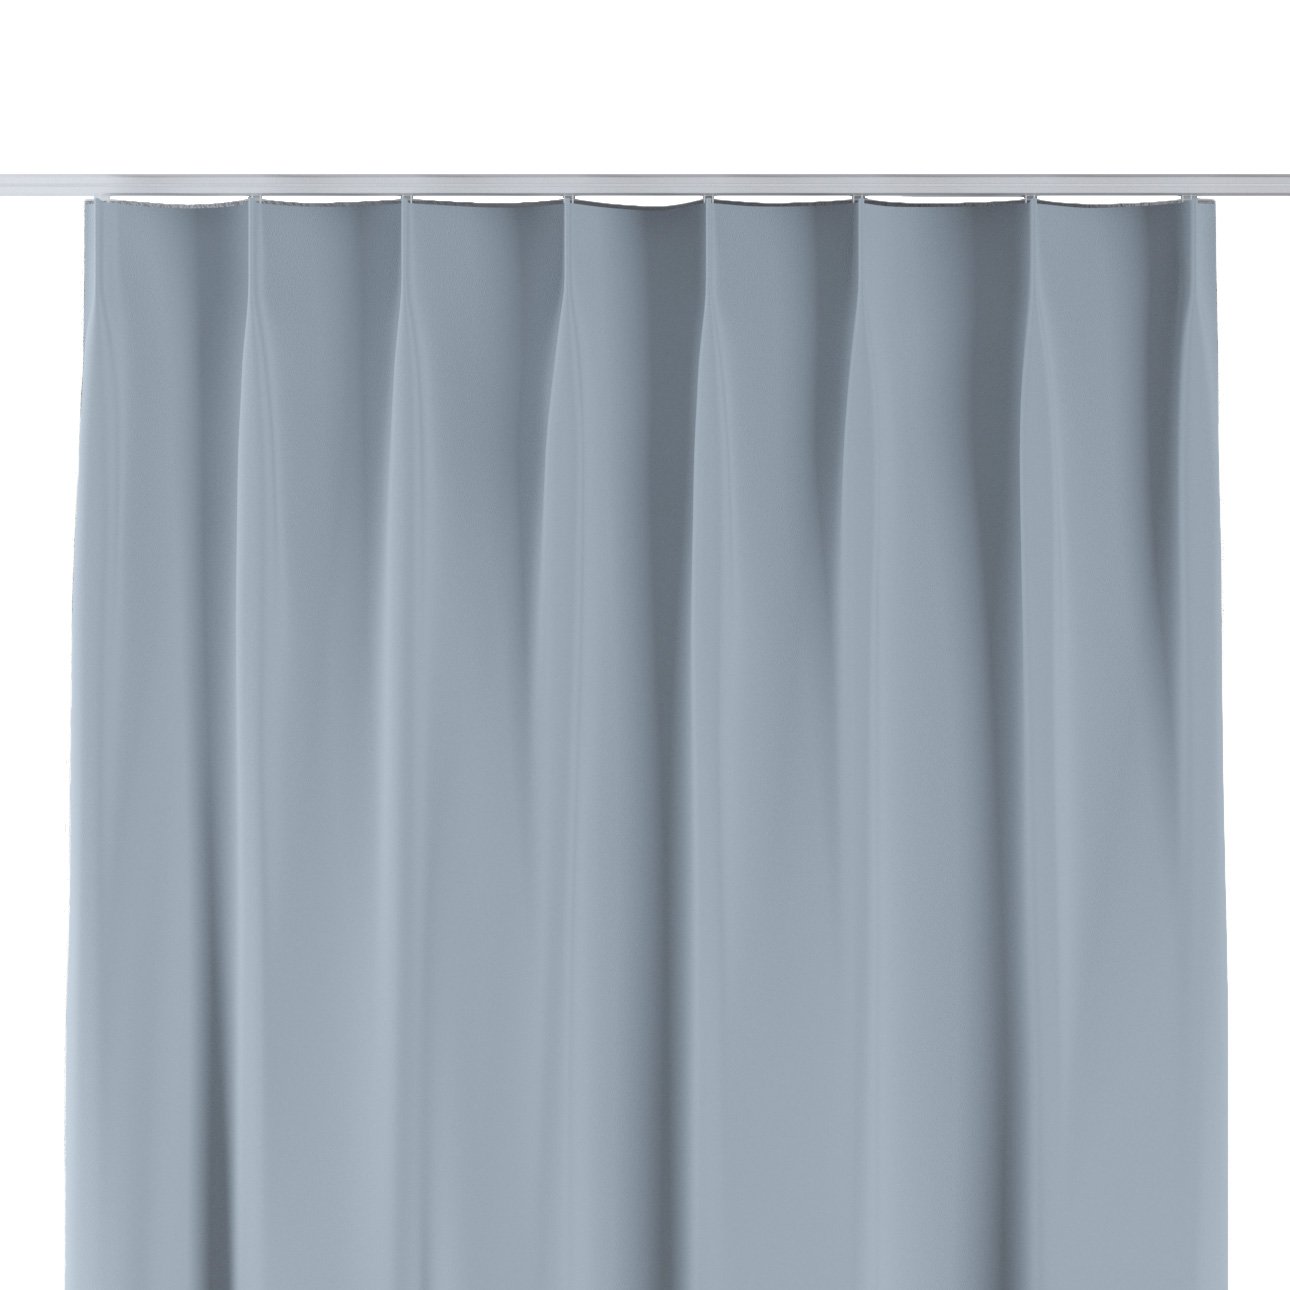 Vorhang mit flämischen 1-er Falten, blau-grau, Blackout 300 cm (269-49) günstig online kaufen